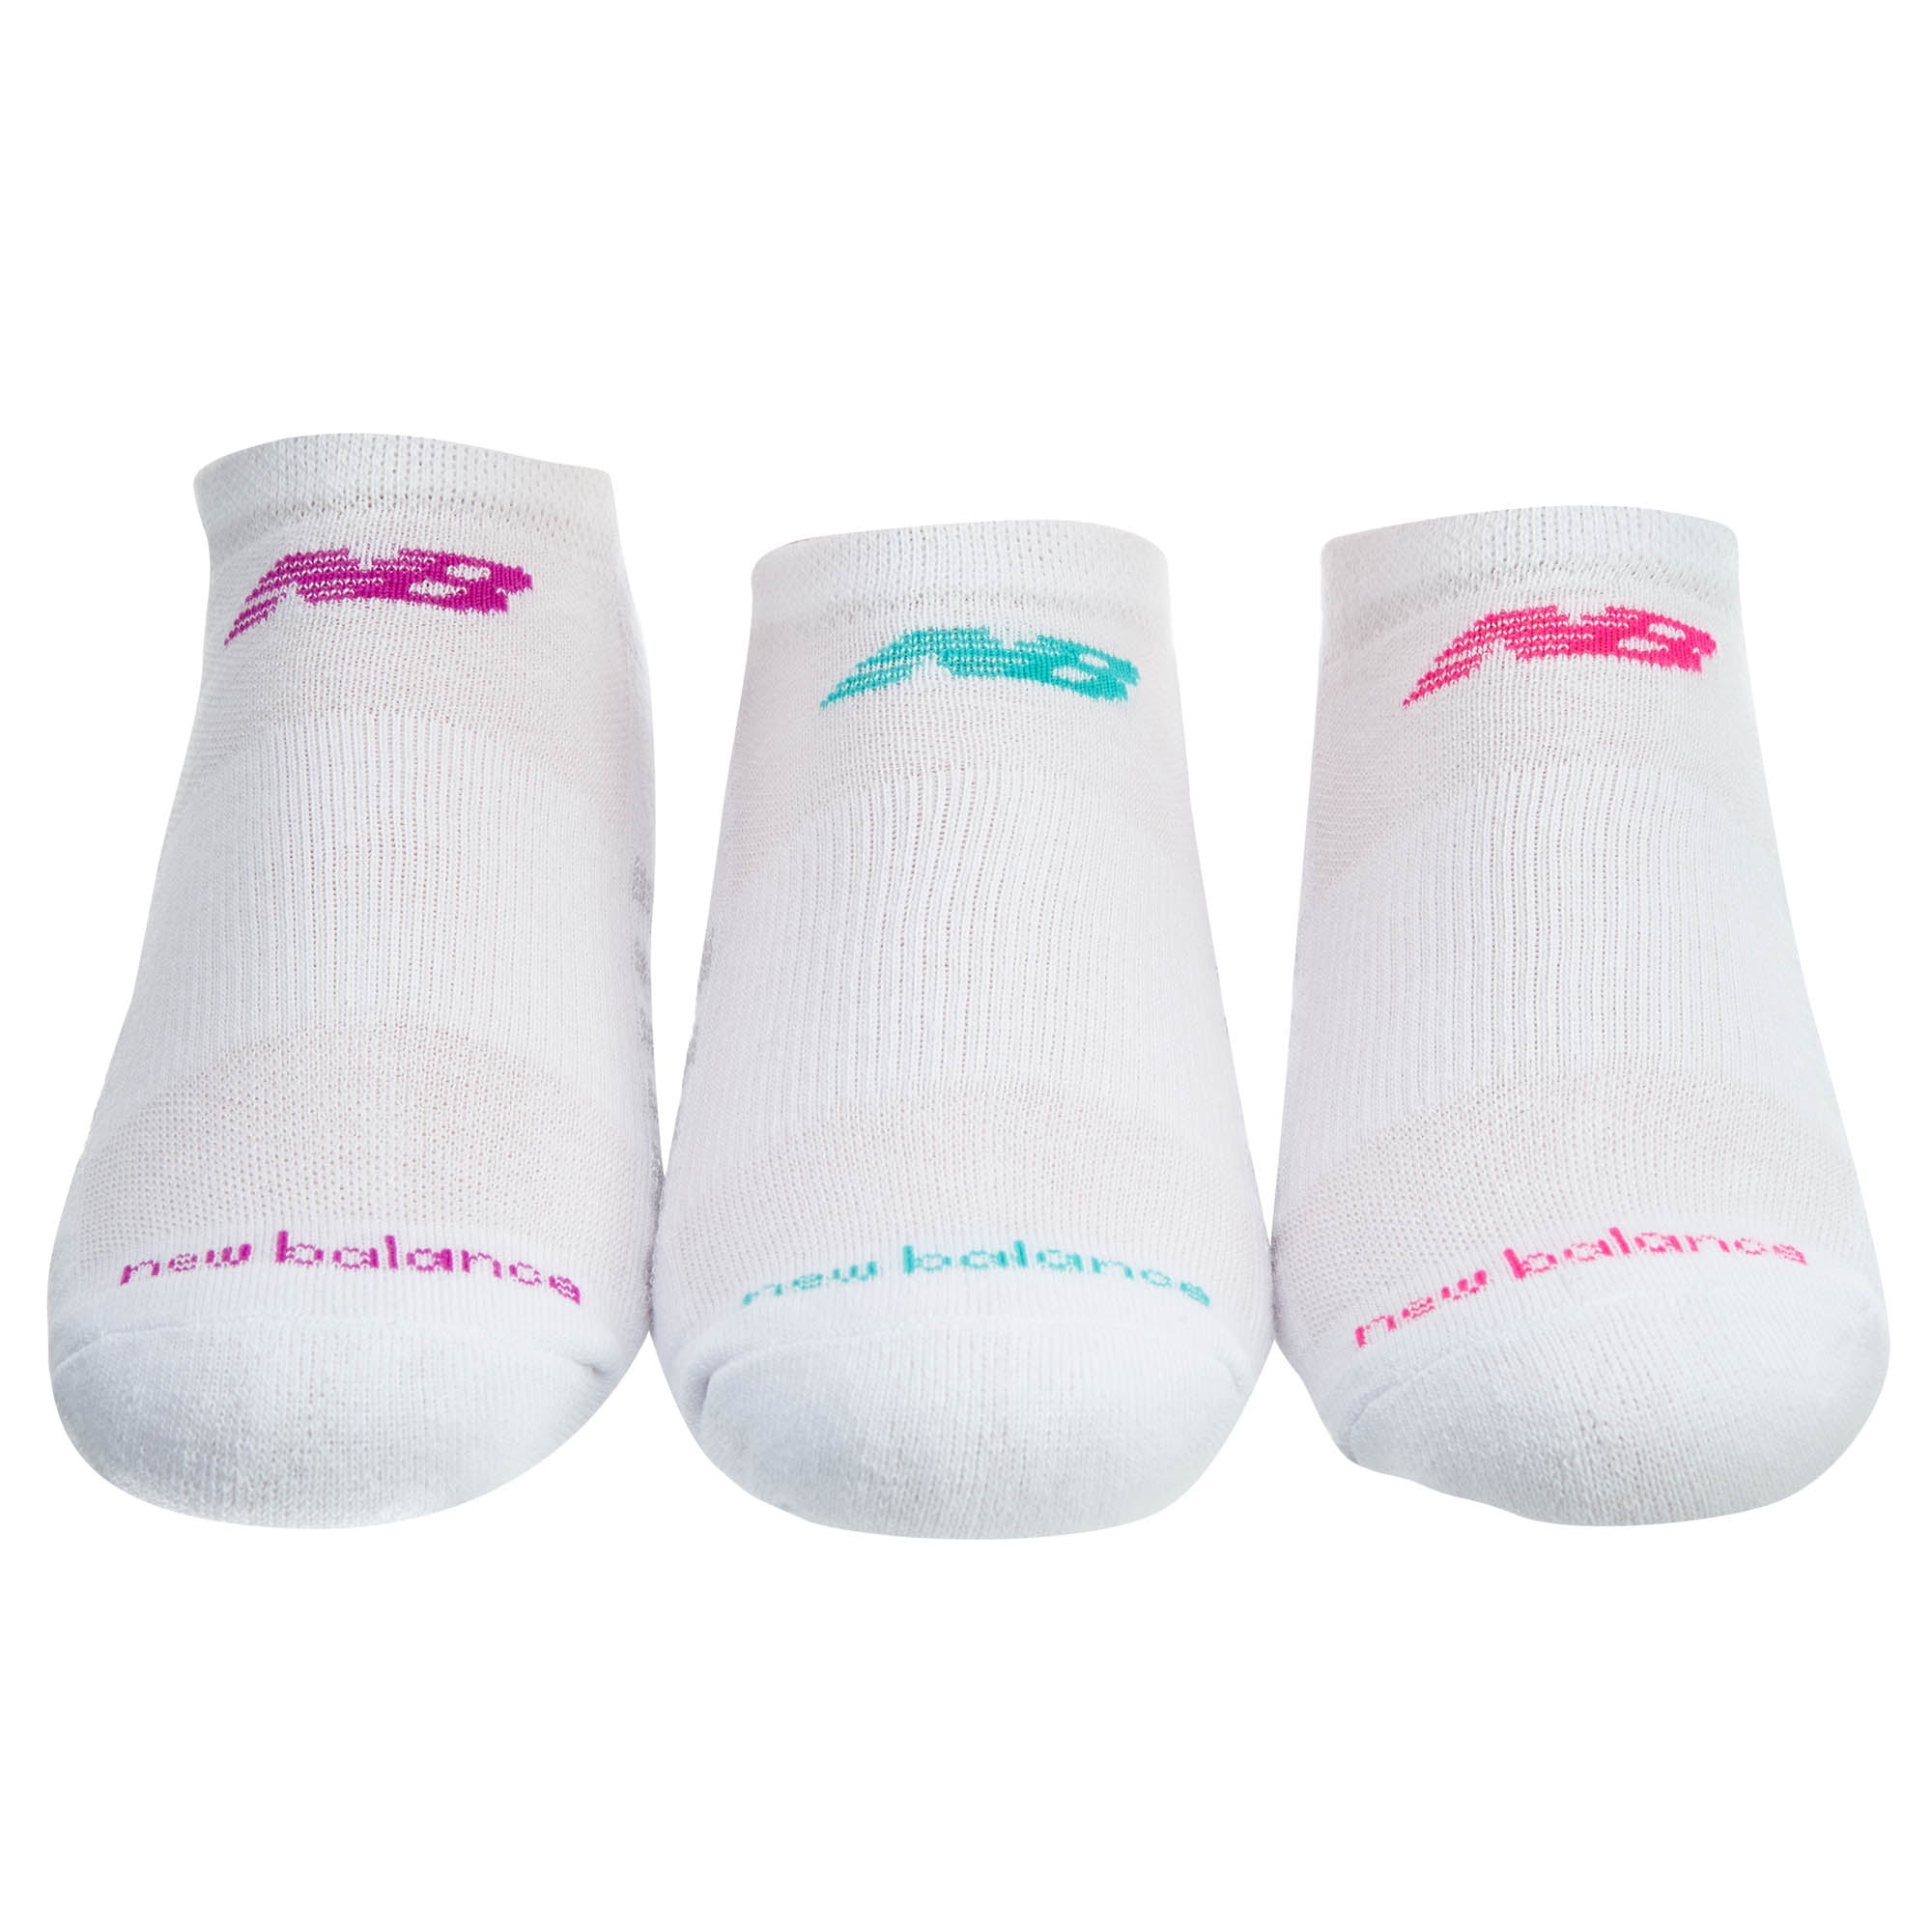 new balance core cotton socks